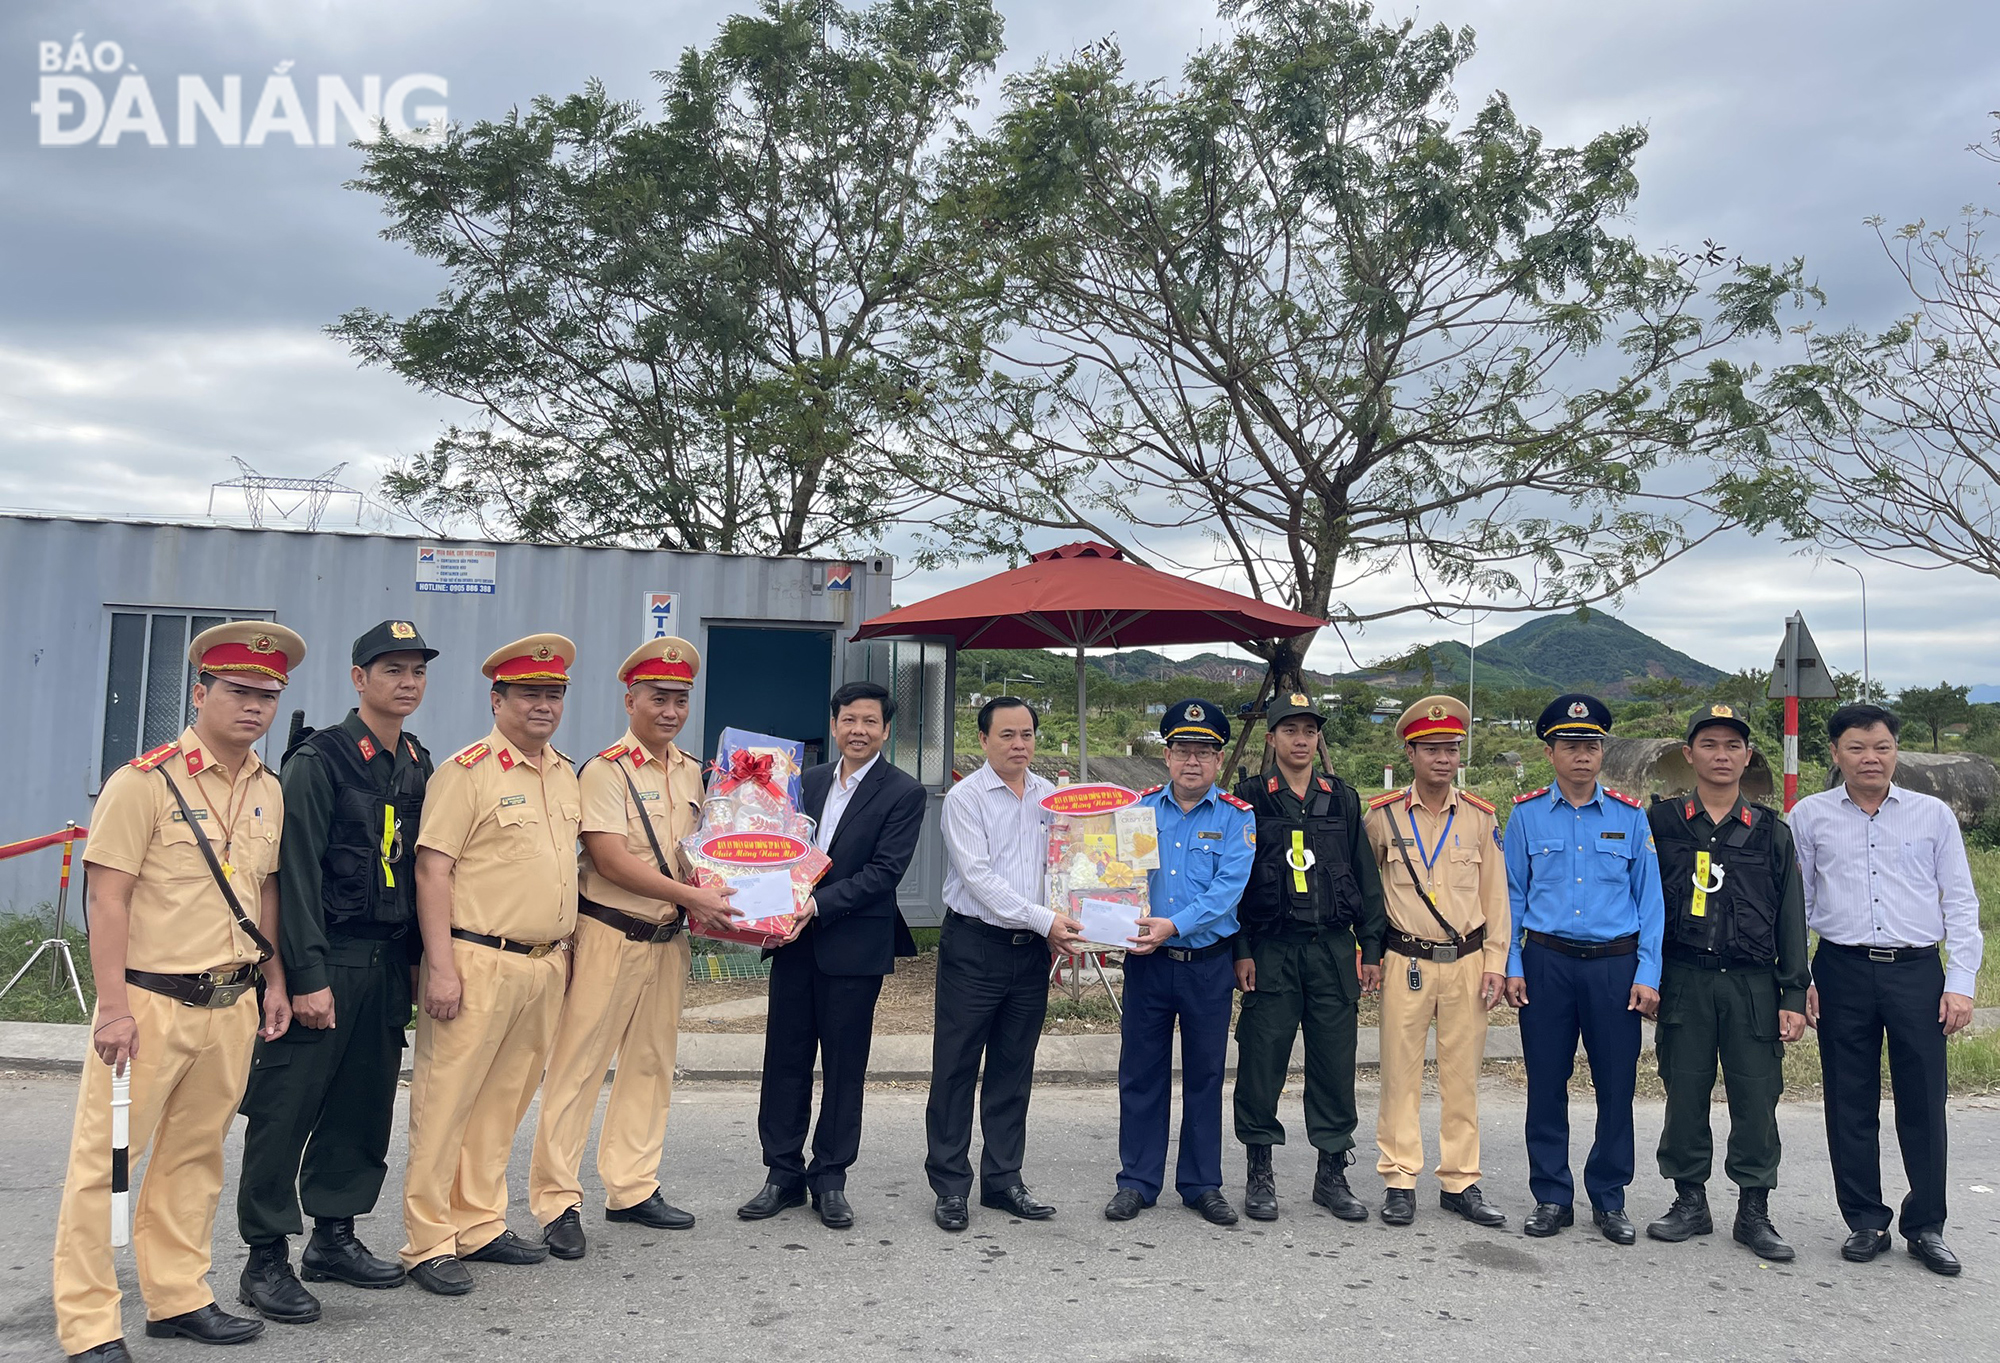 Ban An toàn giao thông thành phố thăm Tết 2 chốt trực trên quốc lộ 1A và đường tránh nam hầm Hải Vân